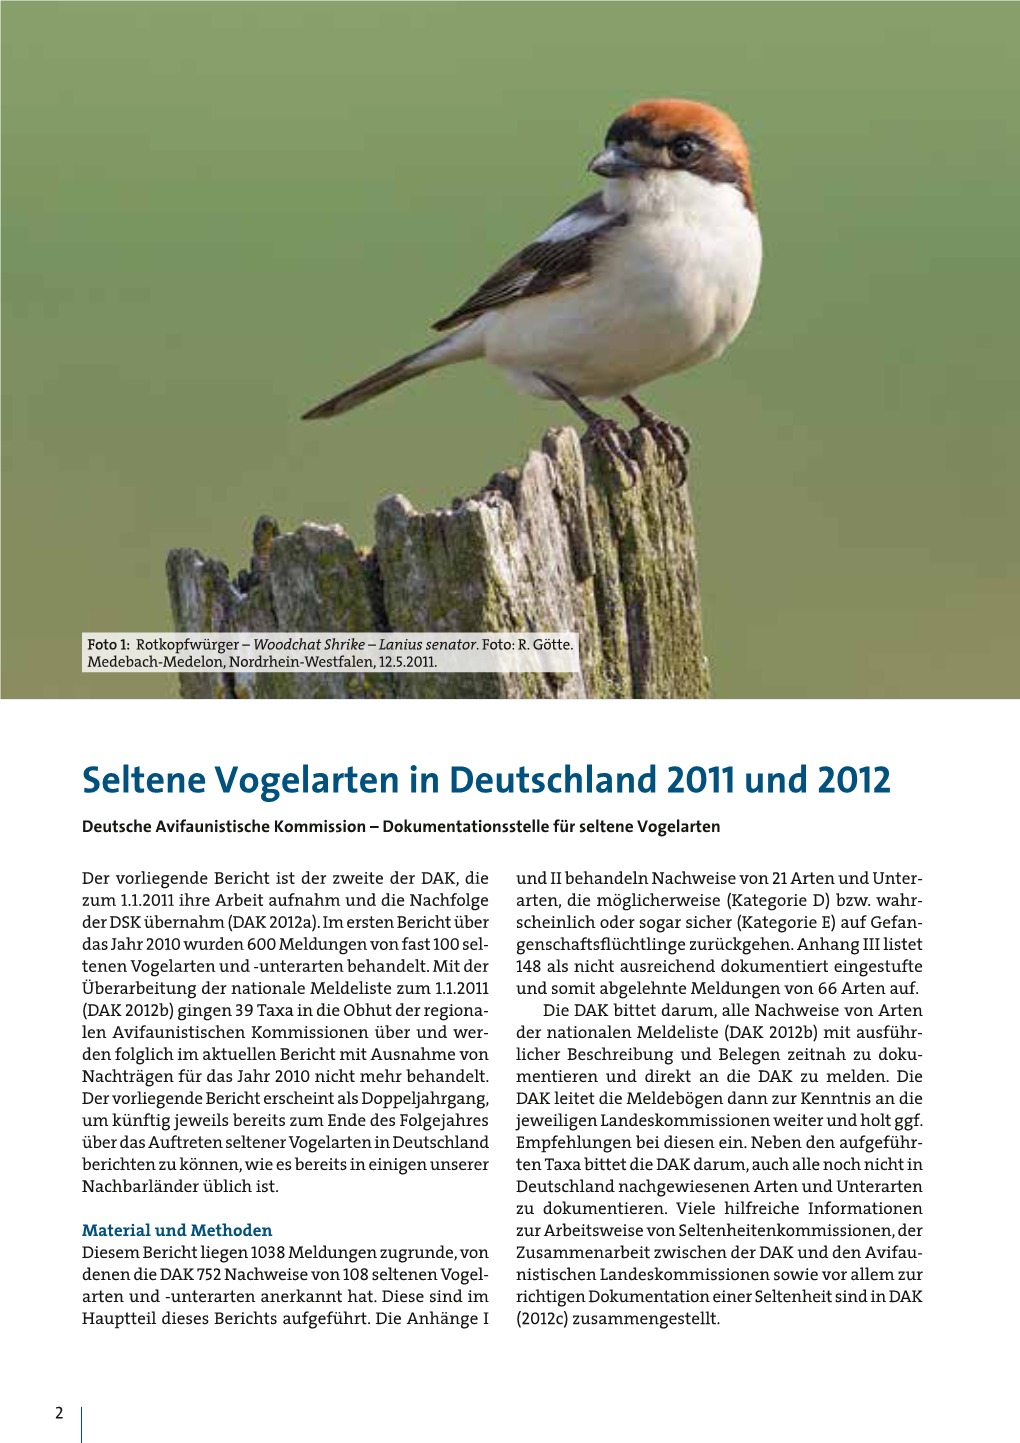 Seltene Vogelarten in Deutschland 2011 Und 2012